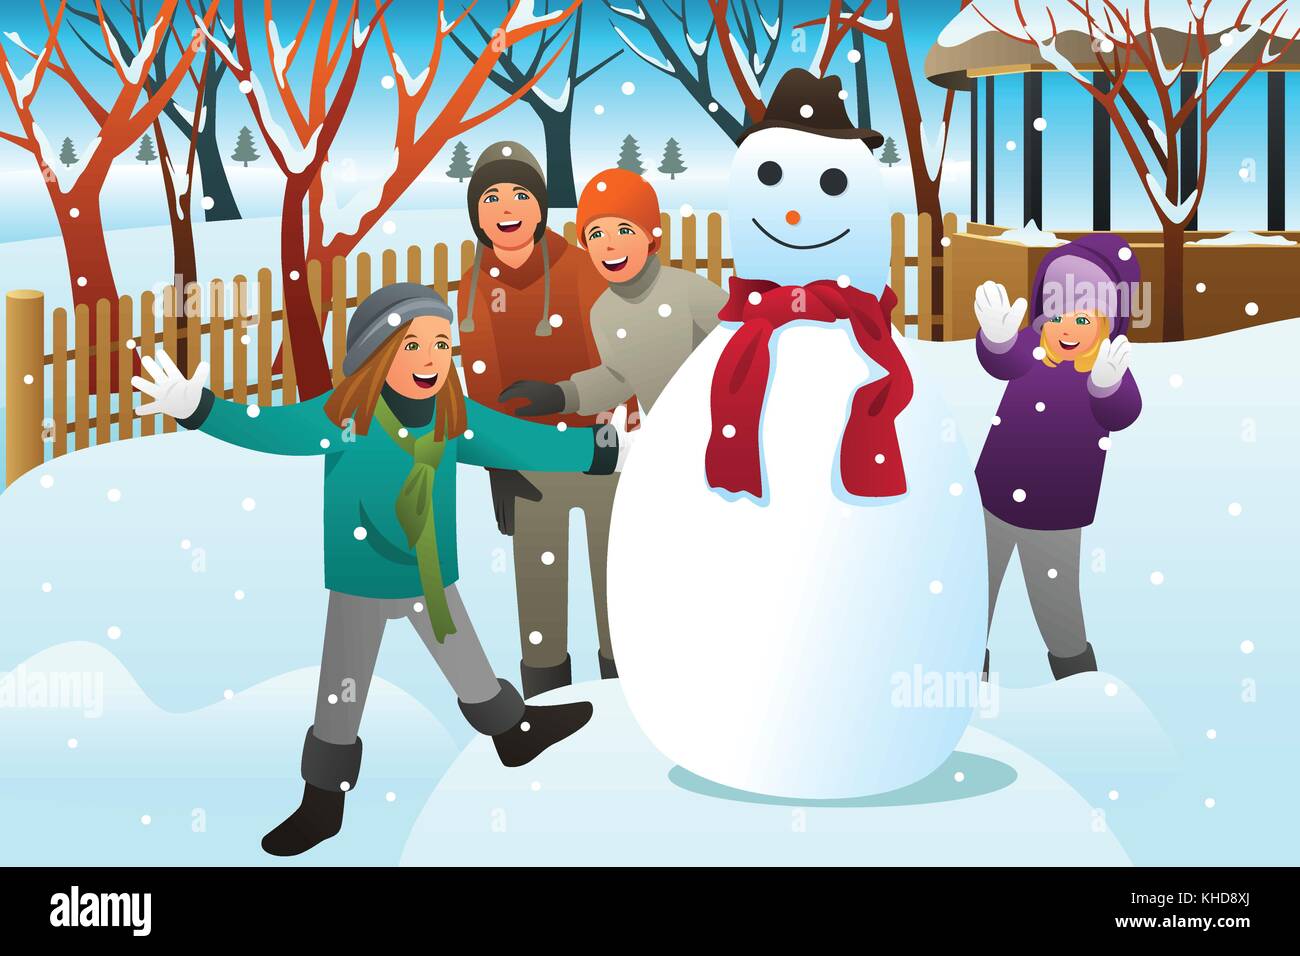 Ein Vektor Abbildung: Kinder und Jugendliche Freunde einen Schneemann bauen Stock Vektor